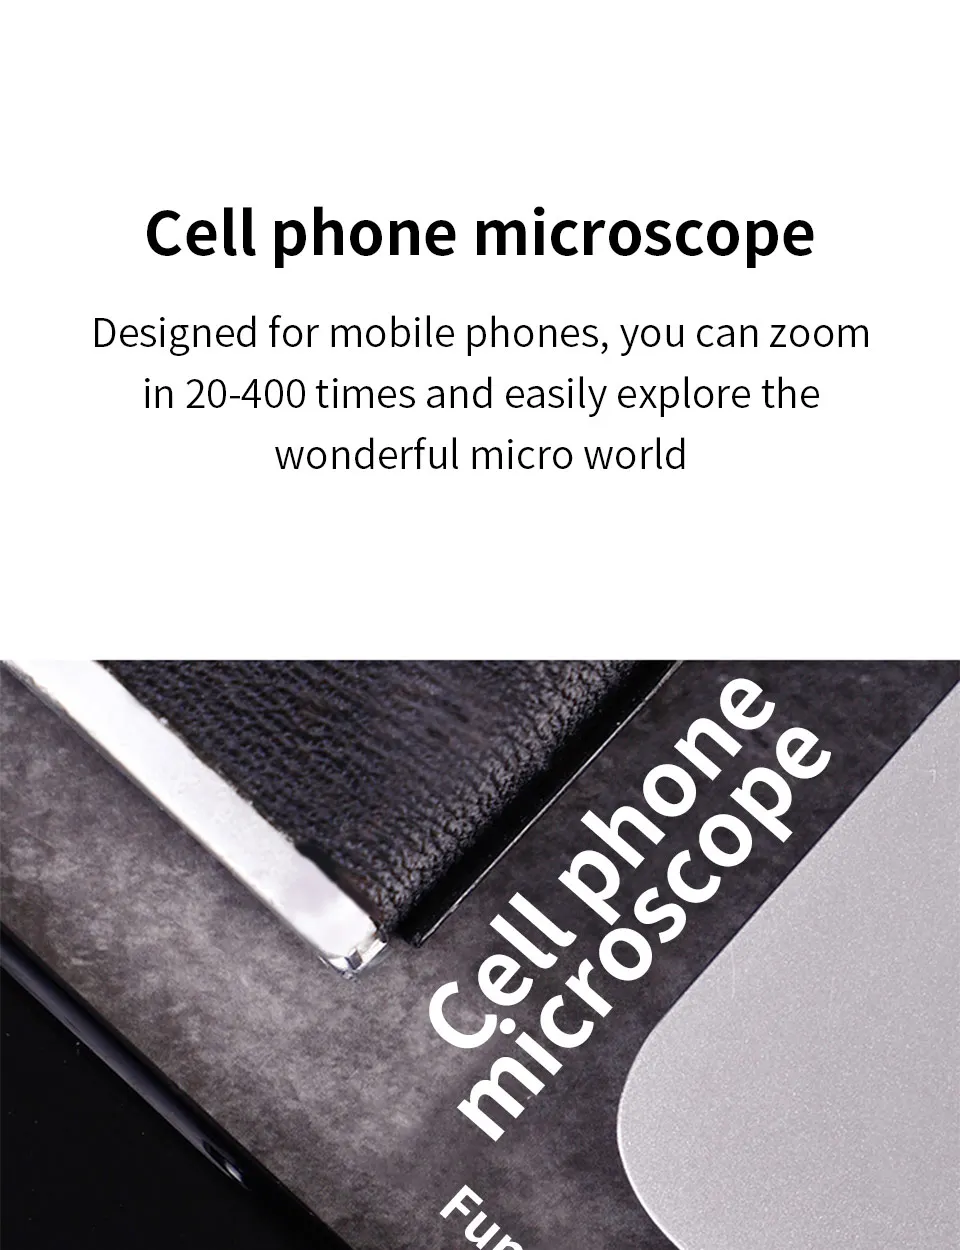 Xiaomi Youpin TIPSCOPE мобильный телефон микроскоп, объектив с высоким разрешением, легкий и удобный, войти в микроскопический мир